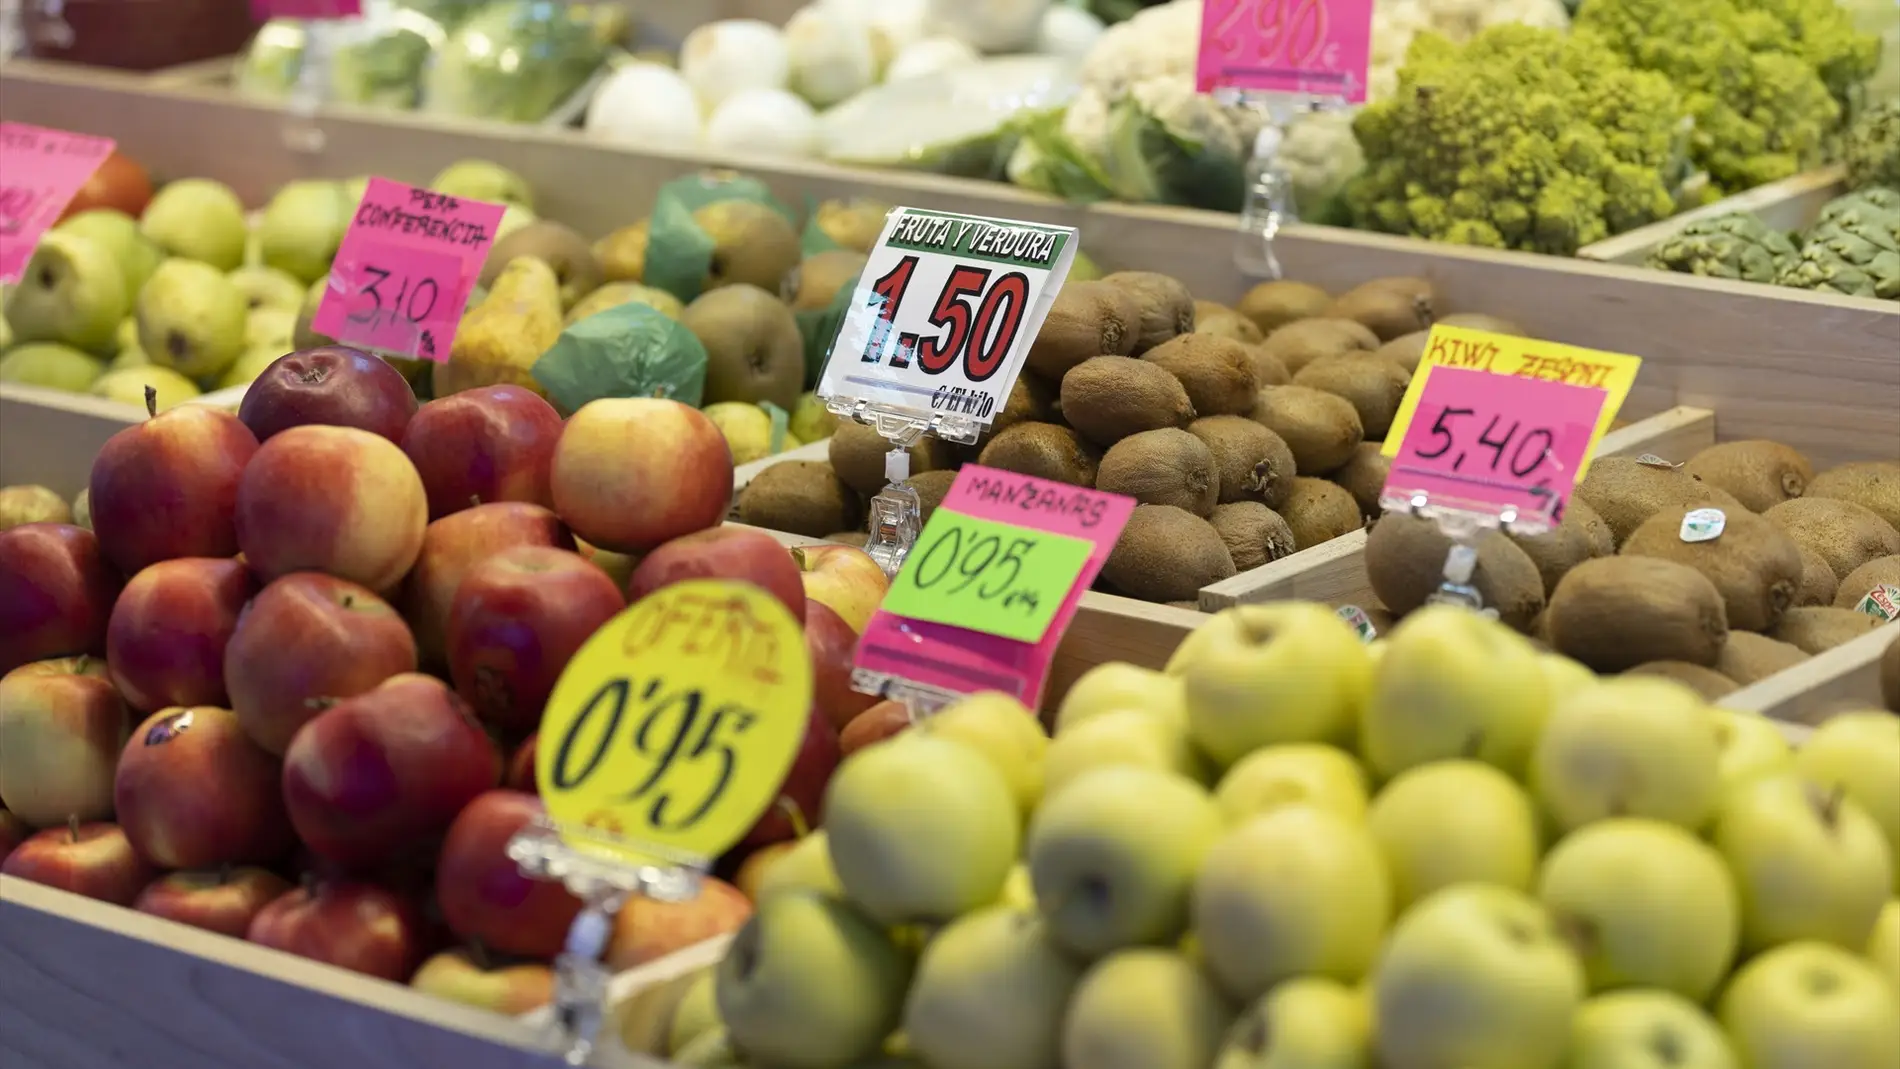 Manzanas y otras frutas en una frutería en un puesto de un mercado